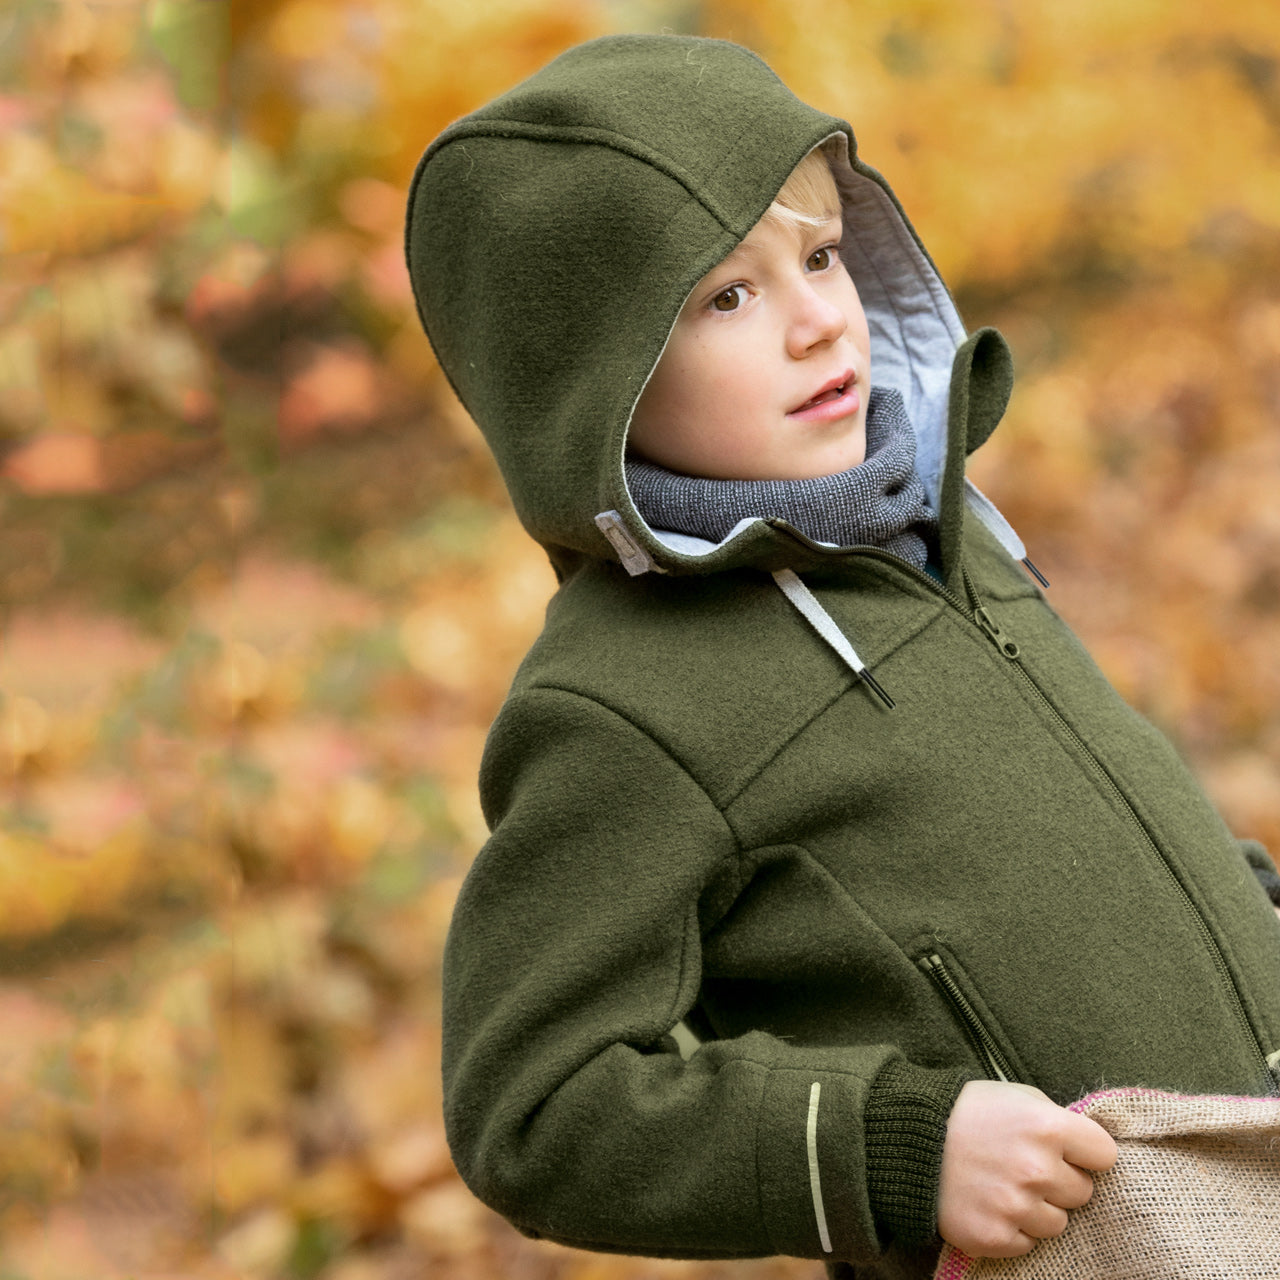 Kids Outdoor Winter Adventurer's Jacket - Olive Green (6-14y)